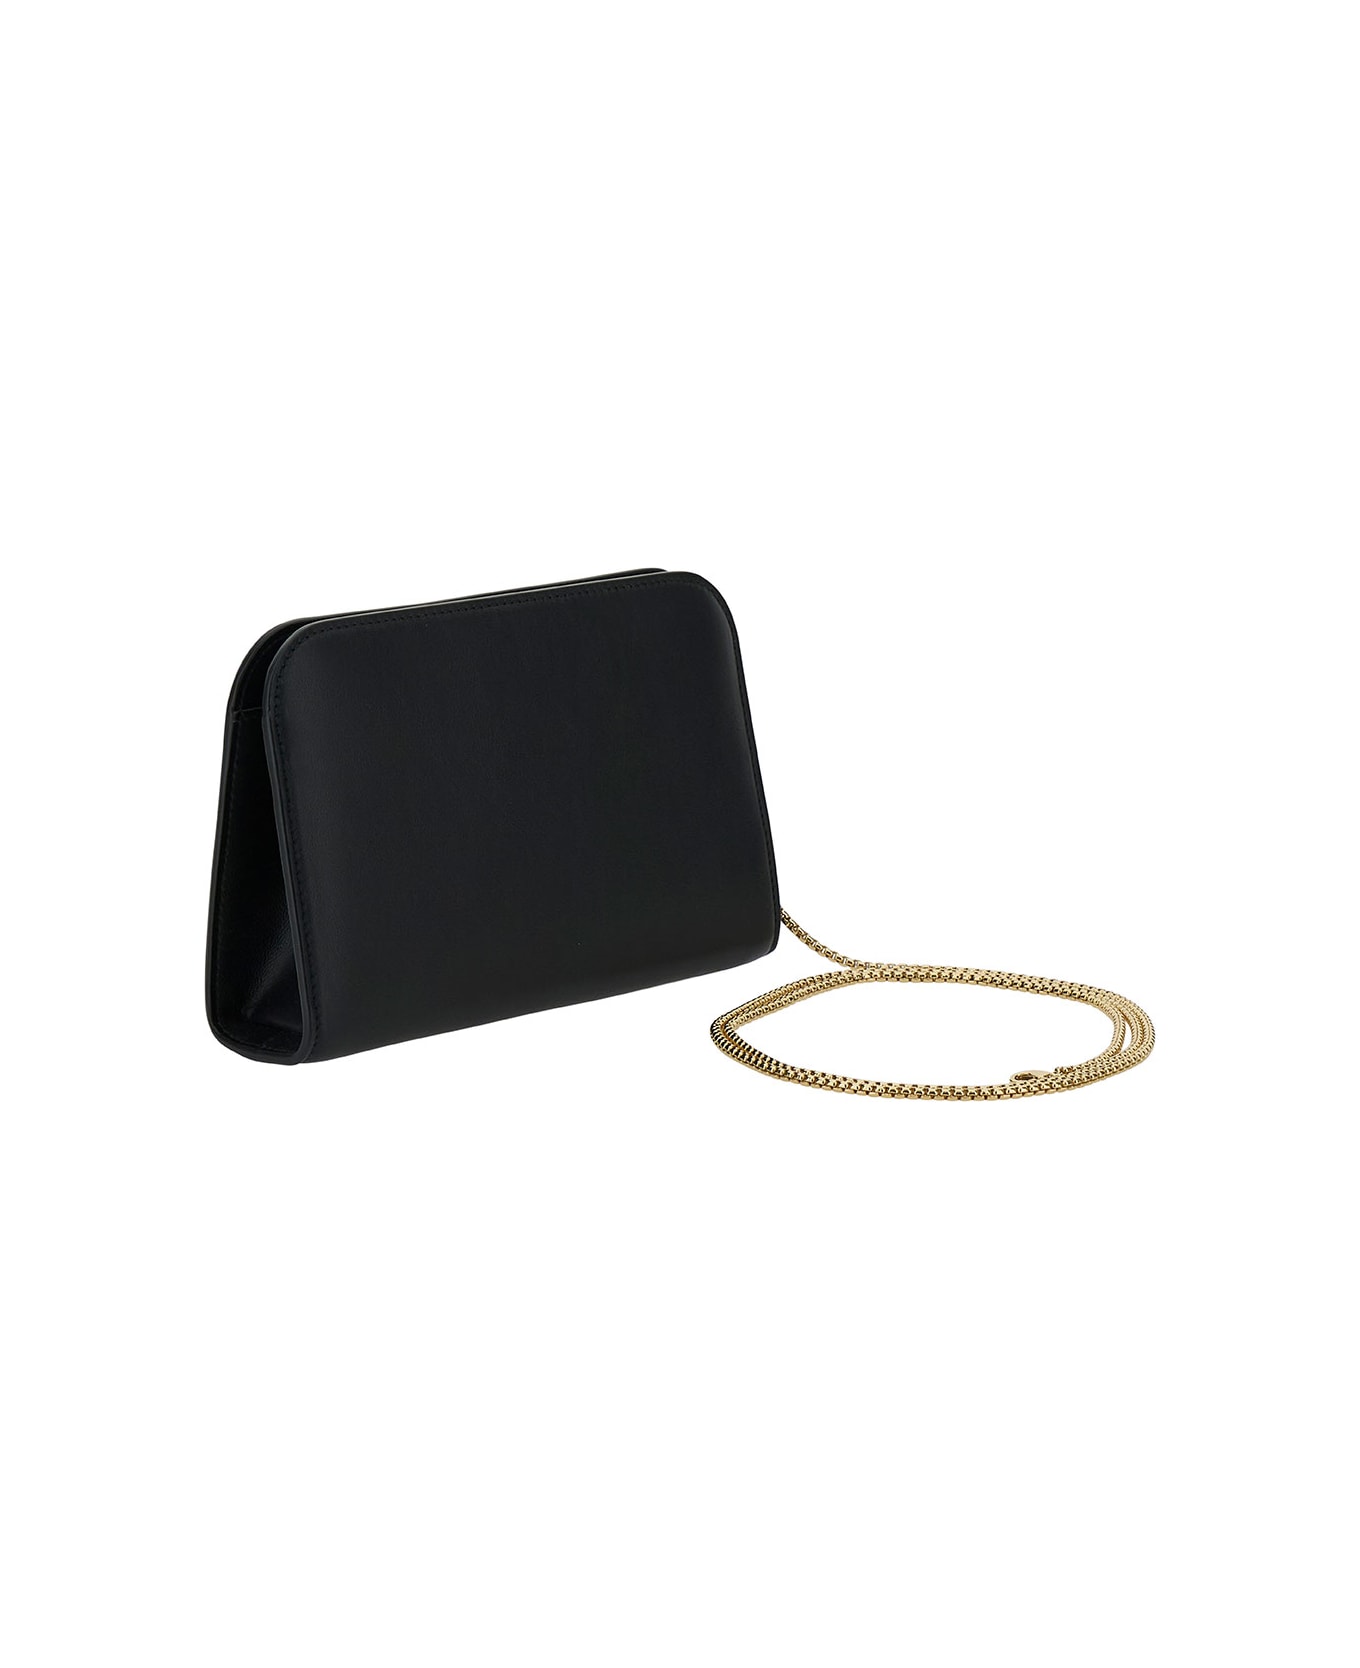 Ferragamo 'diana' Mini Clutch Bag In Black Calf Leather - Black ショルダーバッグ